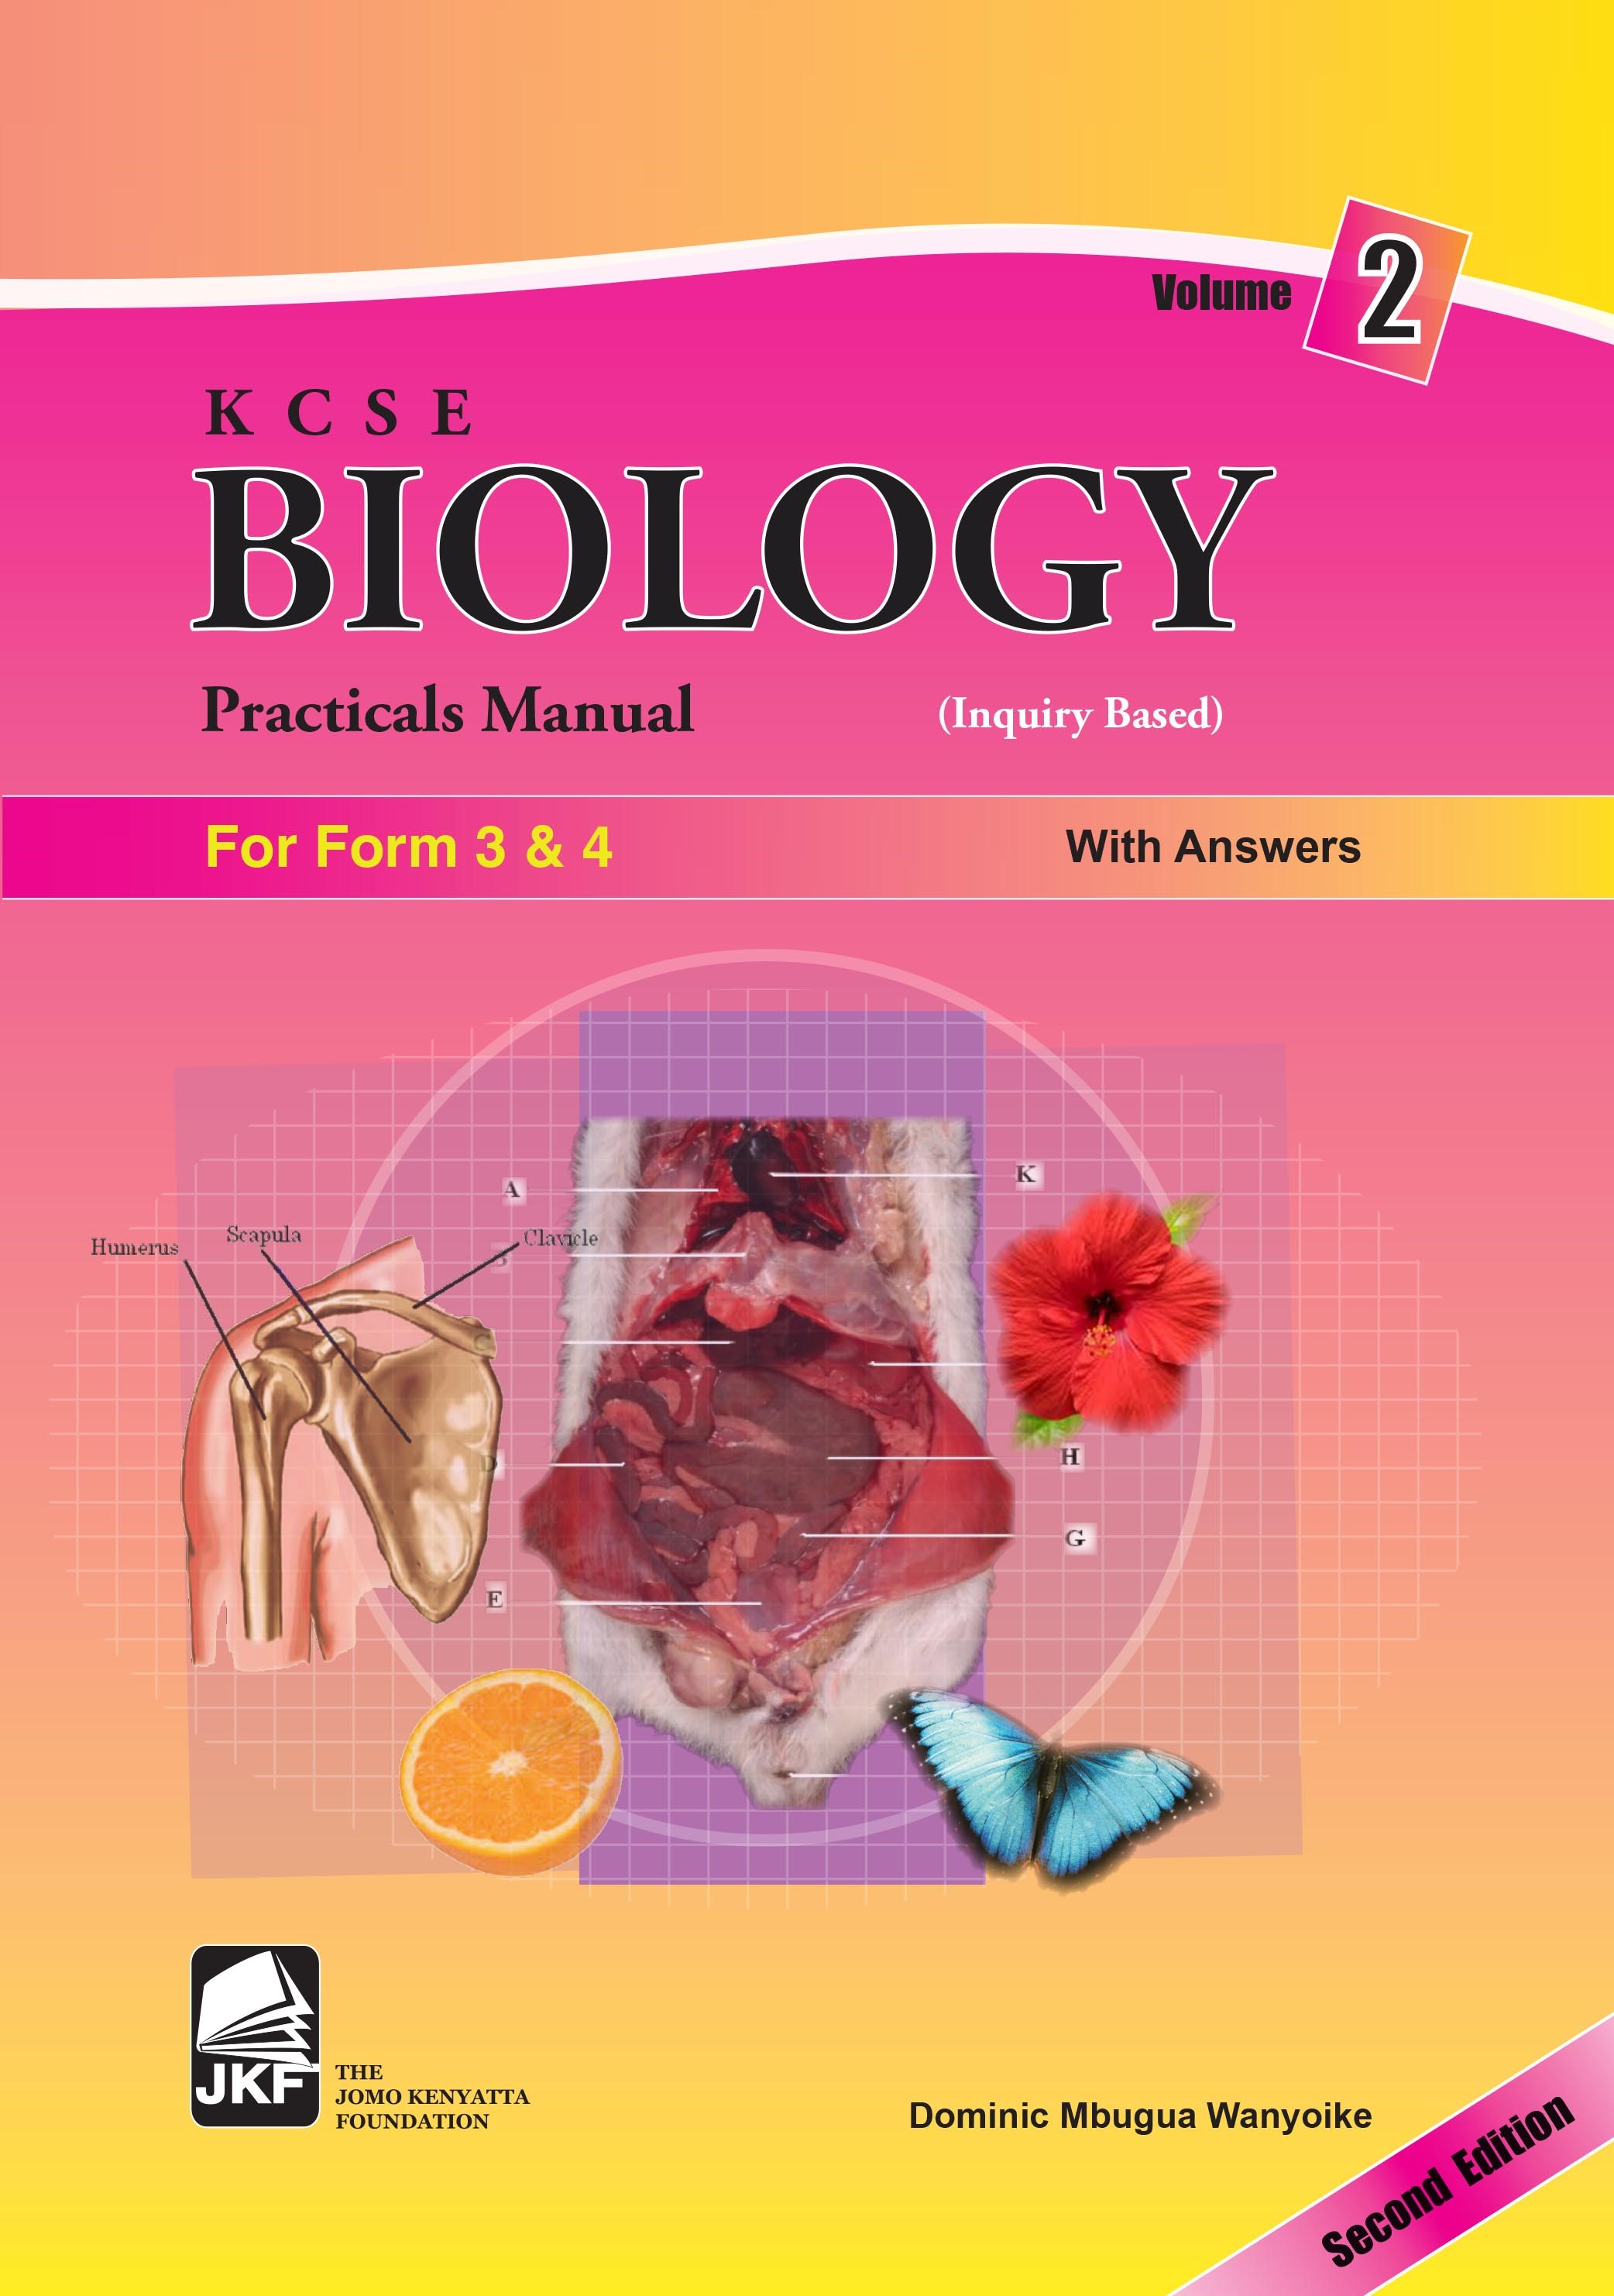 KCSE Biology Practicals Manual Vol. 2 (F3&4)